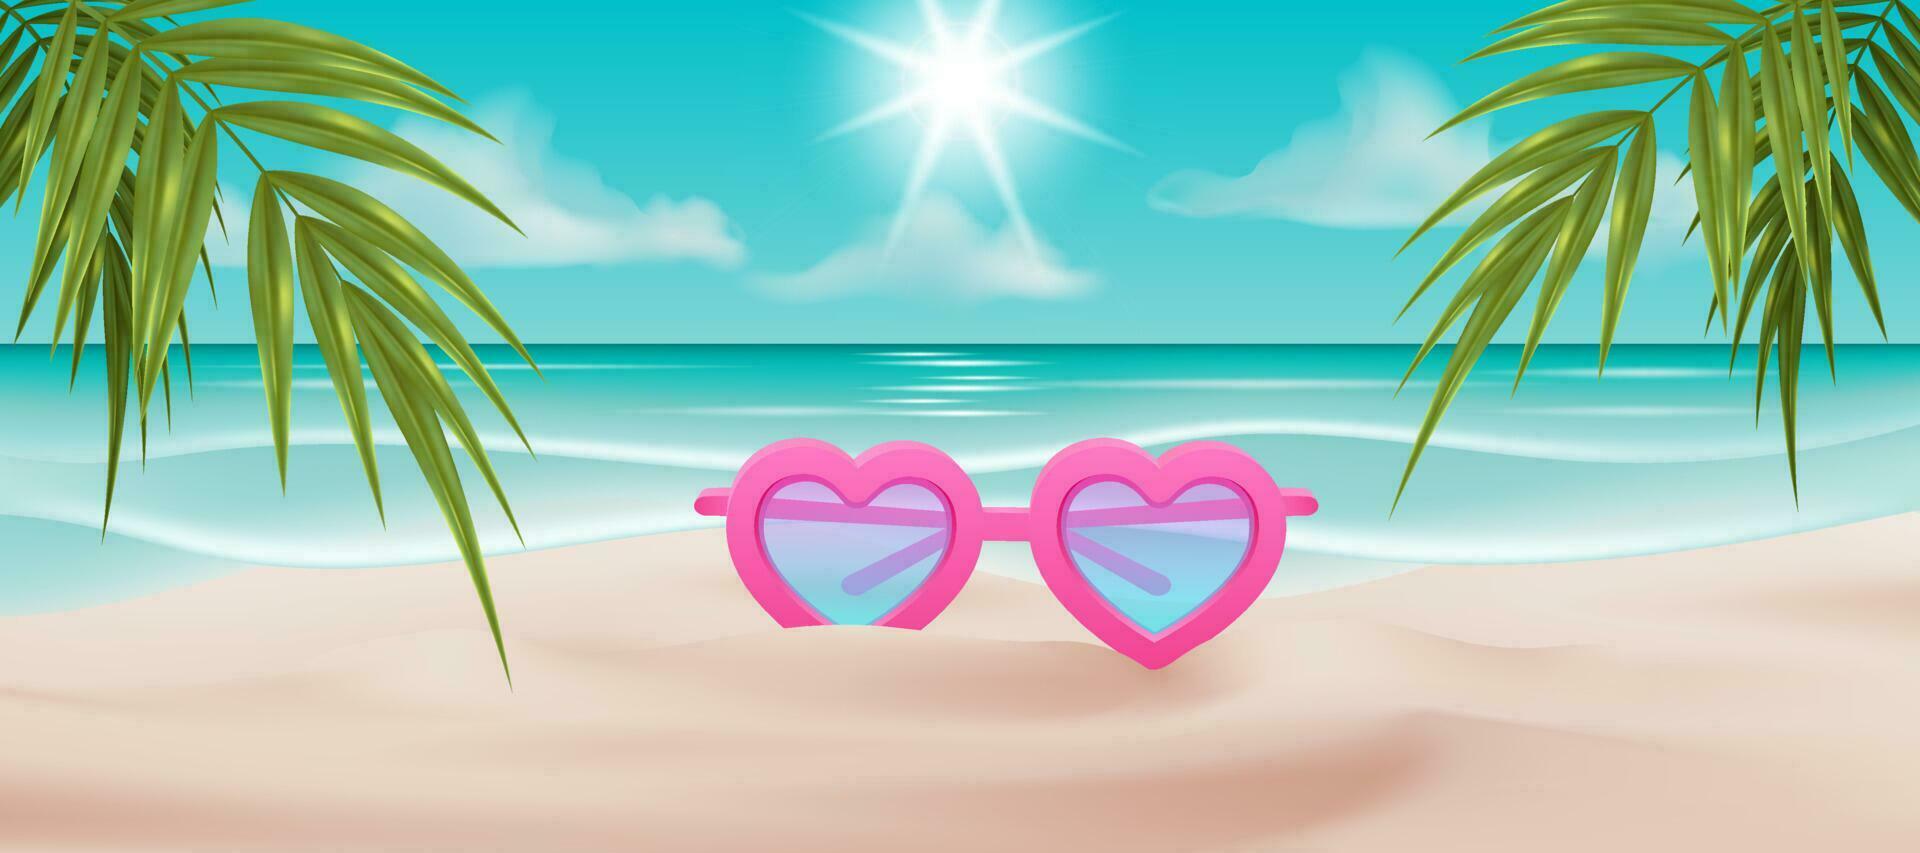 vector illustratie van een strand tafereel met een paar- van hart vormig zonnebril, een lenzenvloeistof, en een palm boom. voor kaarten, affiches, spandoeken, en andere ontwerpen. ideaal voor zomer vakantie. Hallo zomer